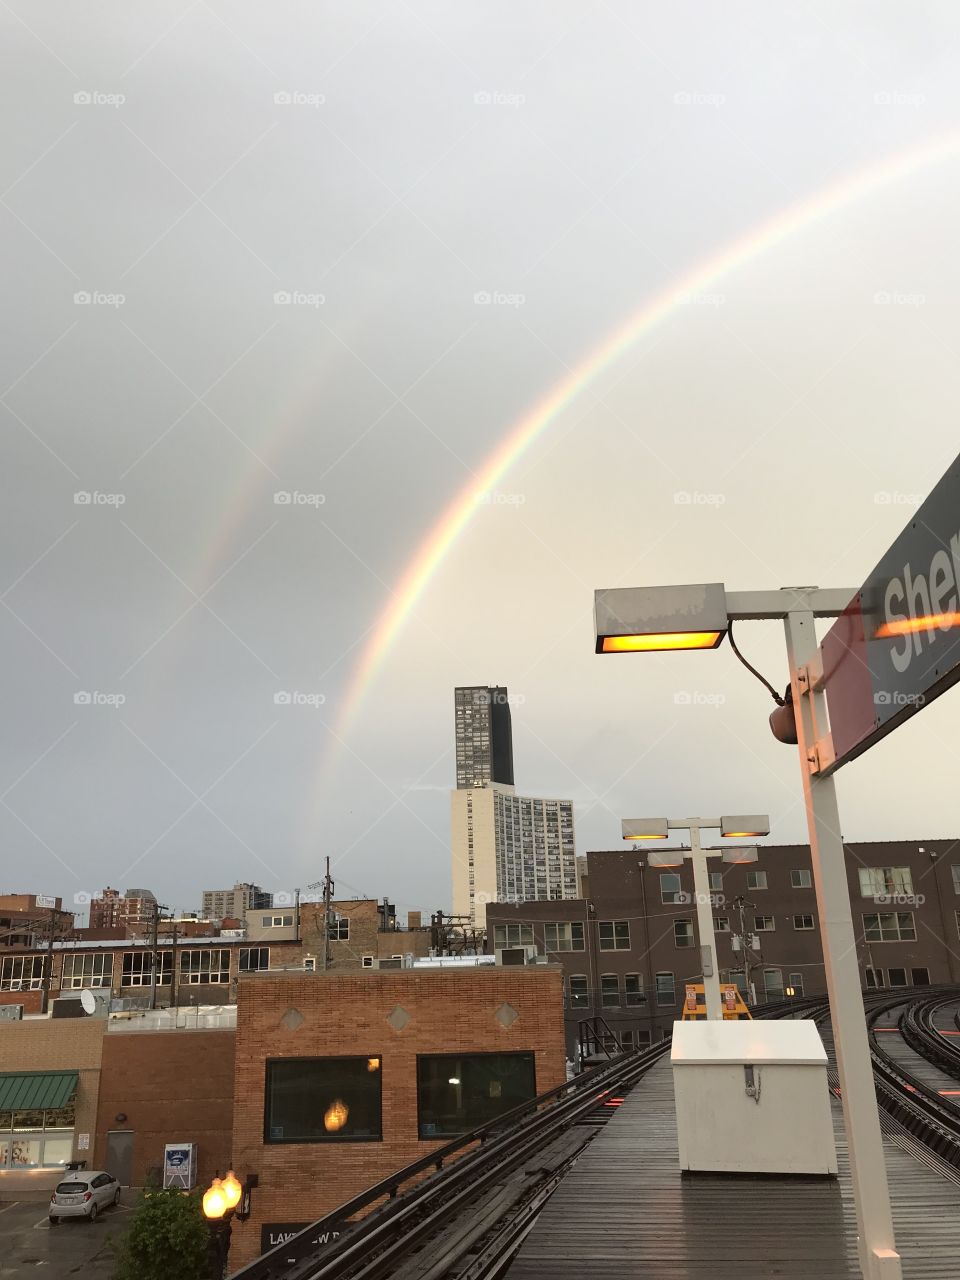 City double rainbow